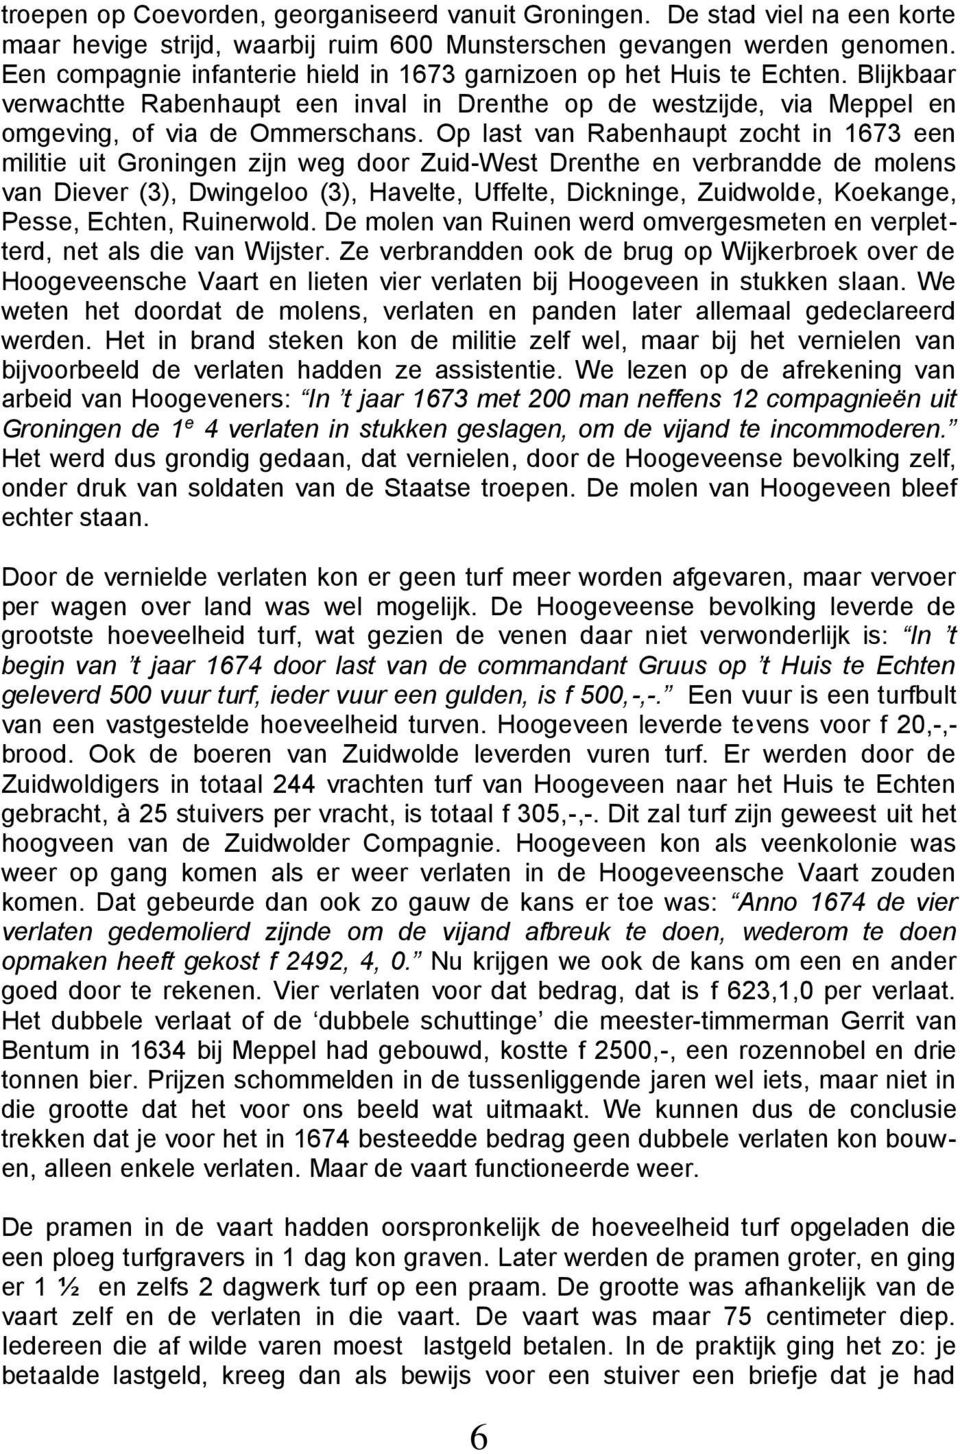 Op last van Rabenhaupt zocht in 1673 een militie uit Groningen zijn weg door Zuid-West Drenthe en verbrandde de molens van Diever (3), Dwingeloo (3), Havelte, Uffelte, Dickninge, Zuidwold e,